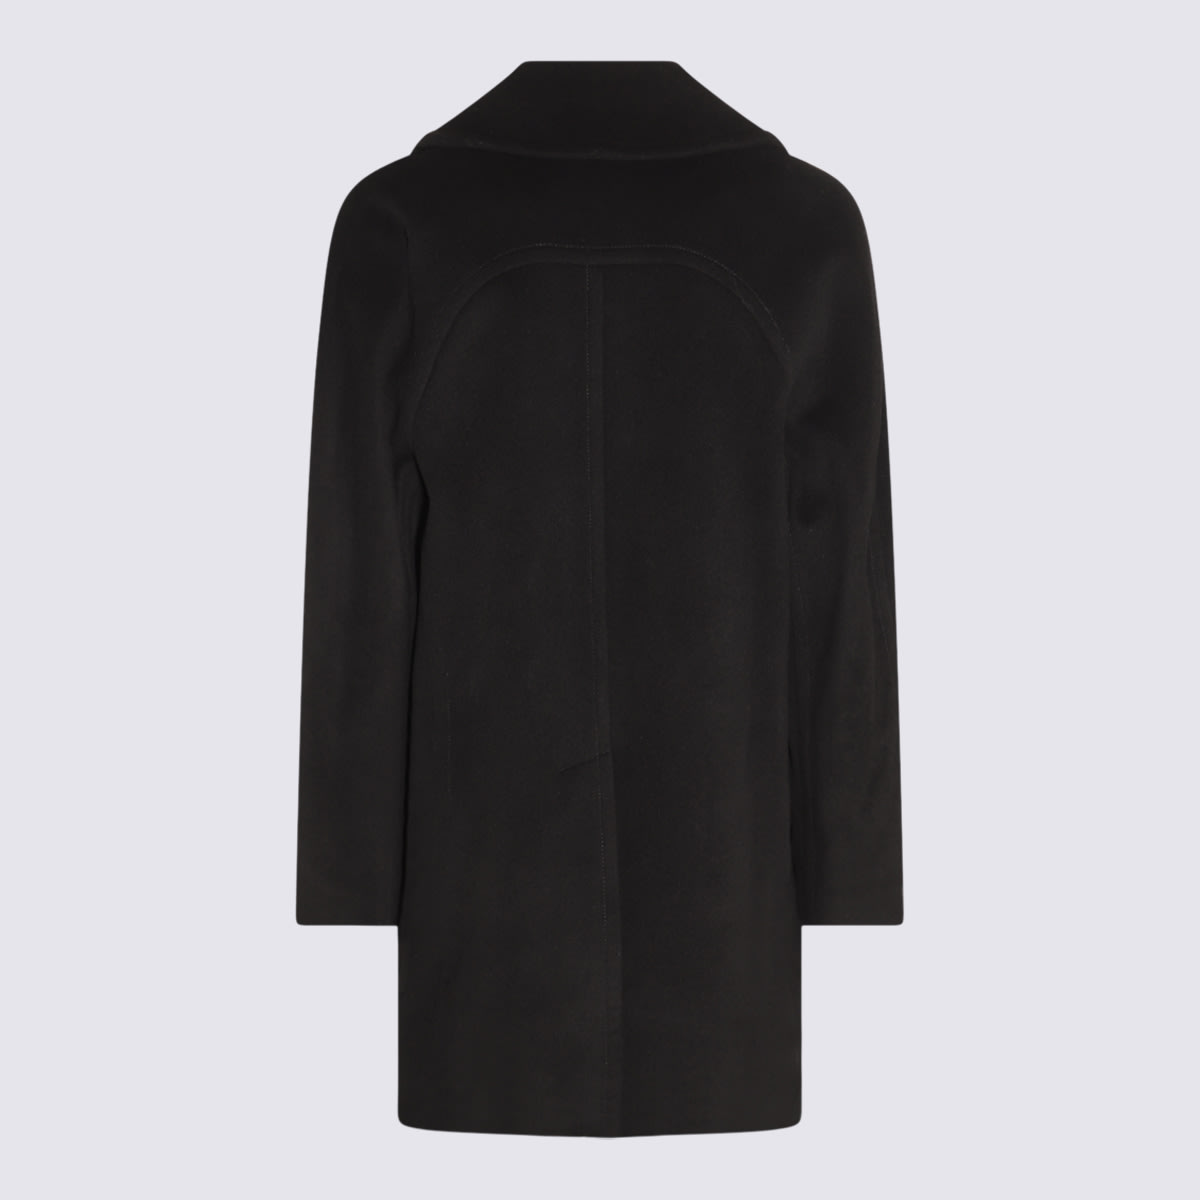 Alexander Mcqueen Black Wool Coat